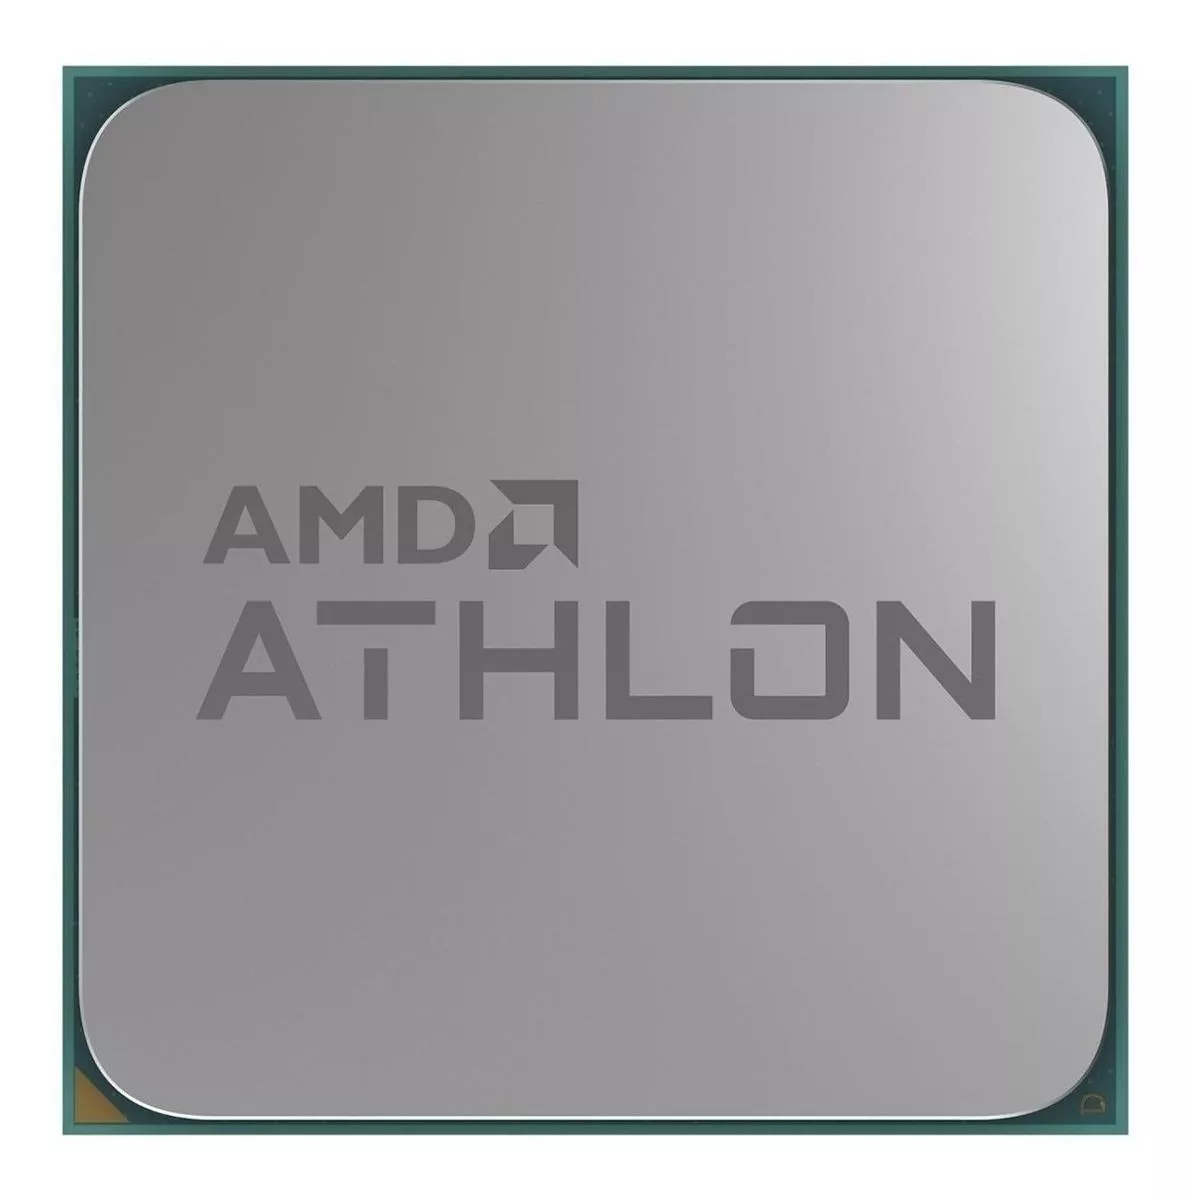 Tercera imagen para búsqueda de athlon 3000g